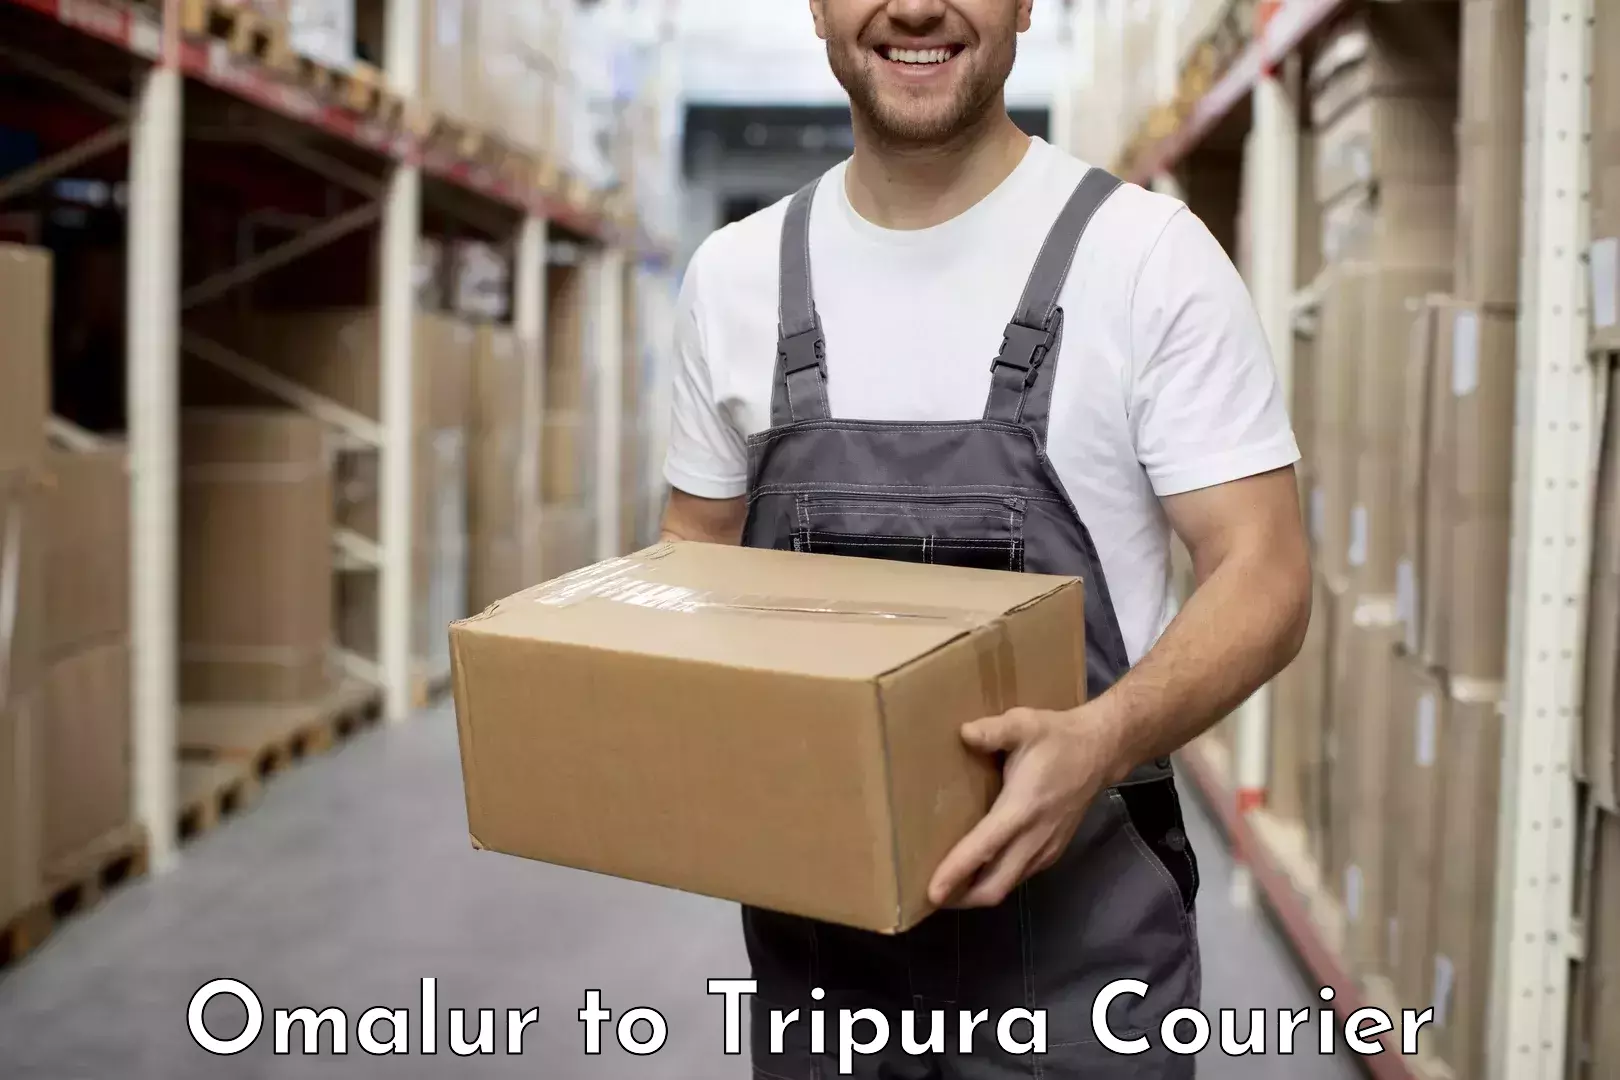 Courier service comparison Omalur to North Tripura